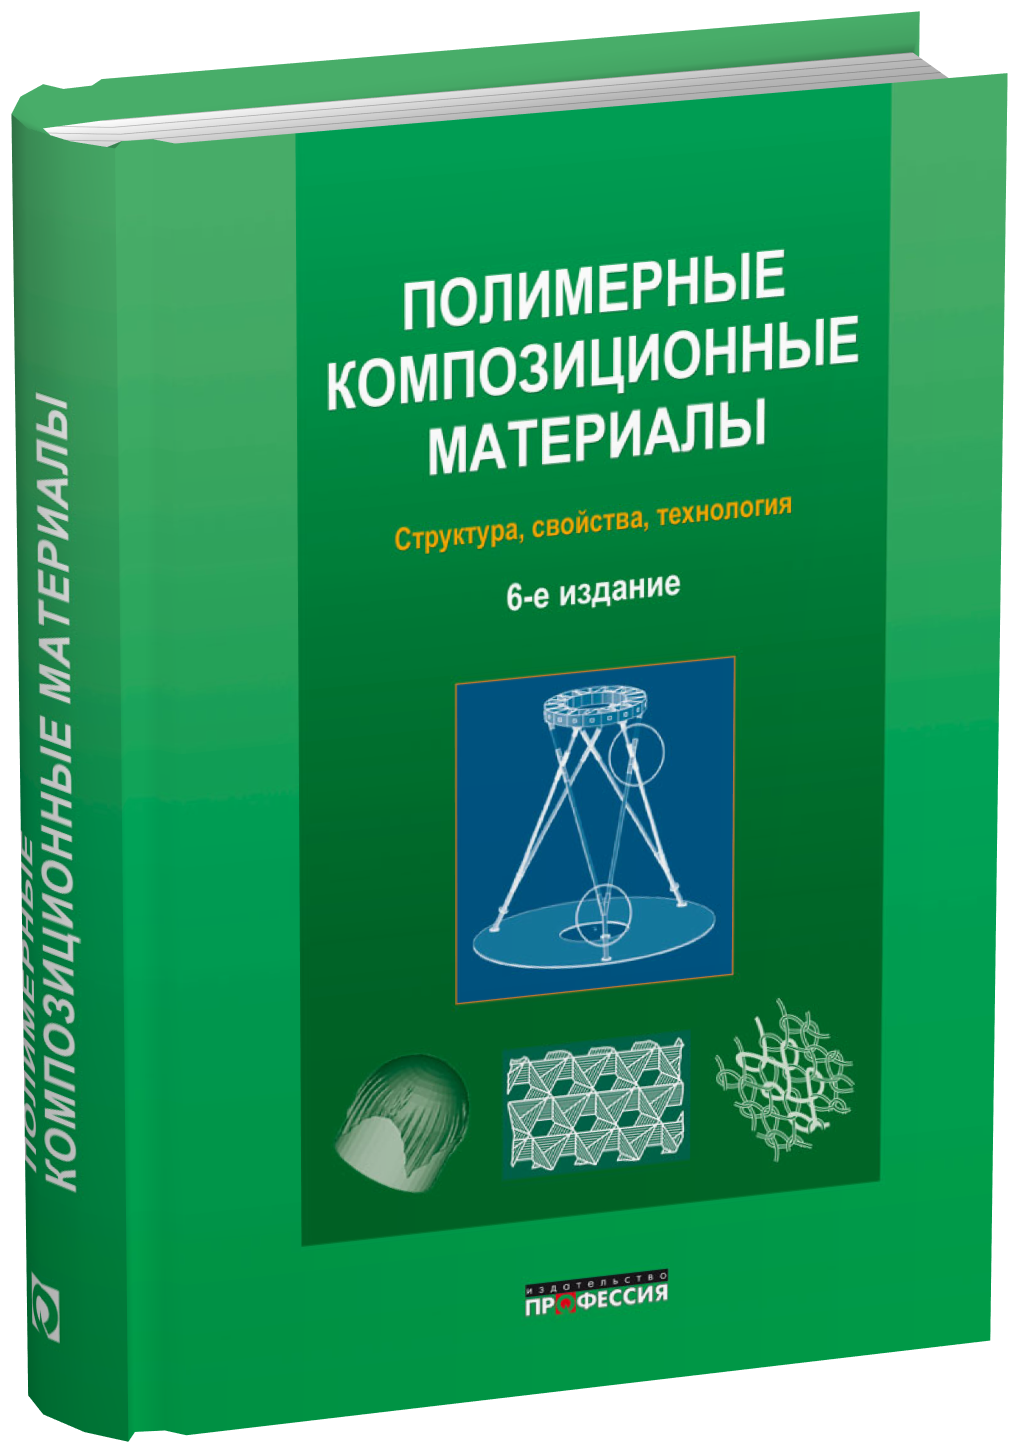 Полимерные композиционные материалы: структура, свойства, технология 6-е исправленное и дополненное издание